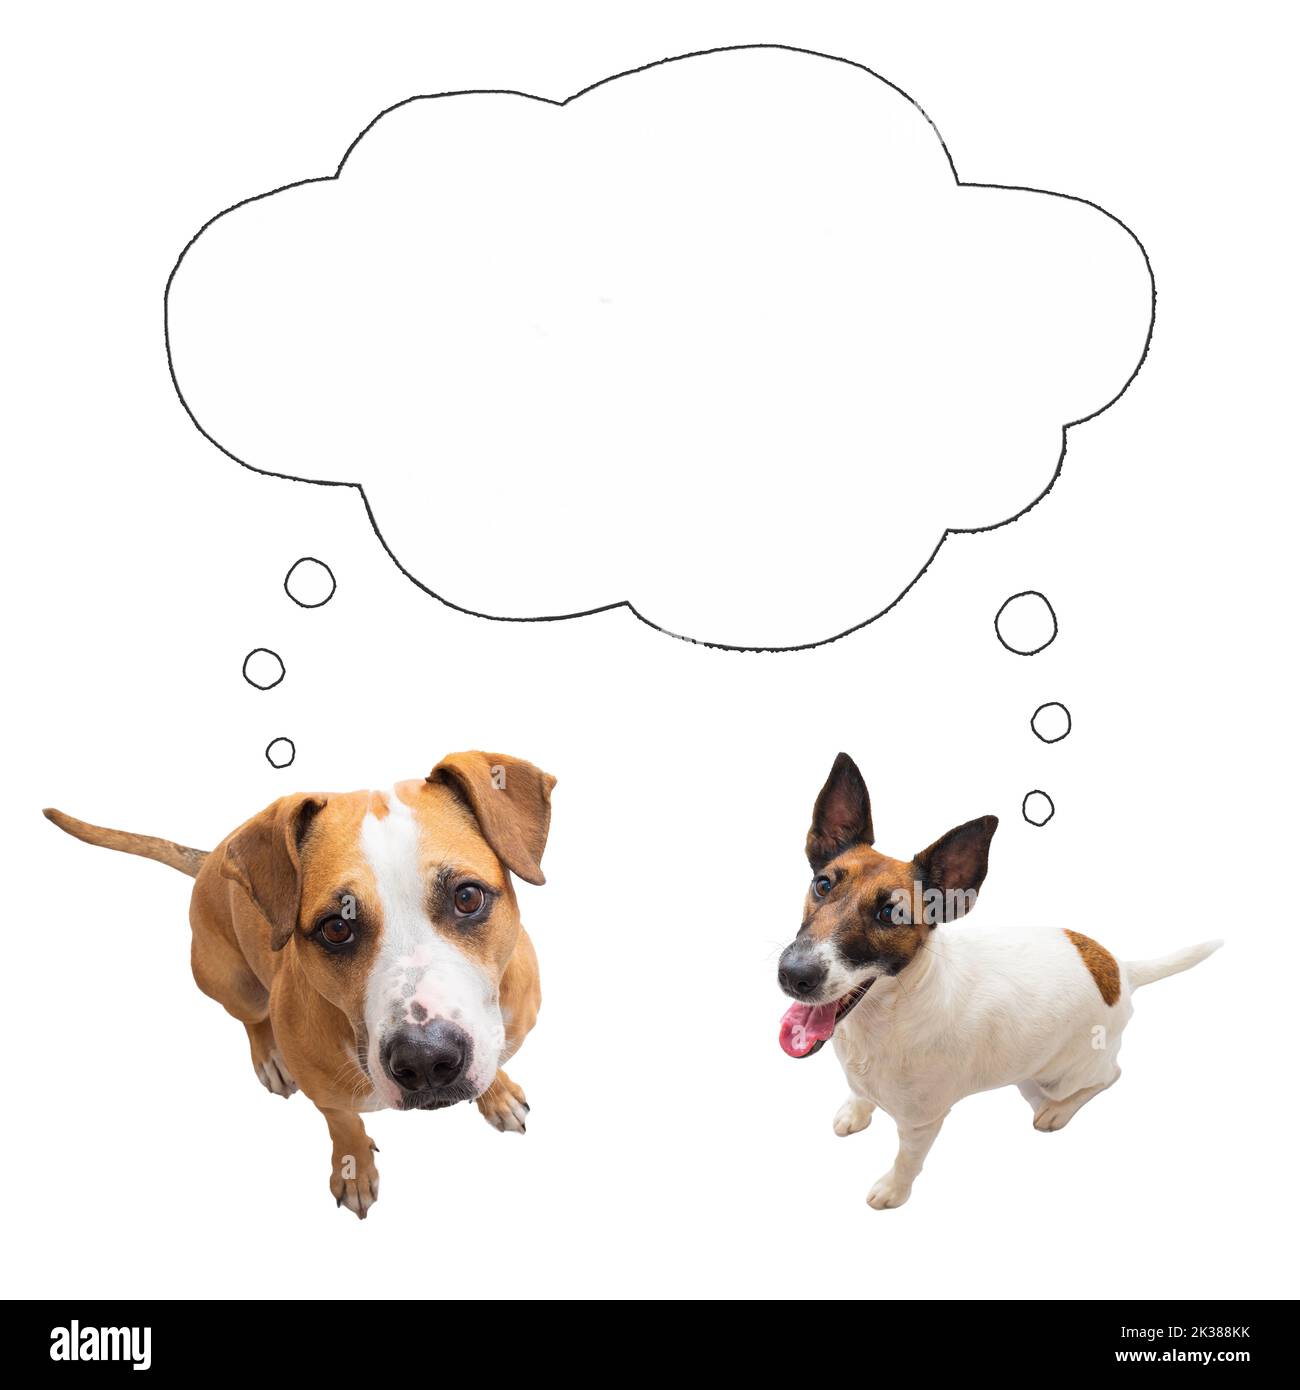 Deux chiens drôles regardant la caméra avec la bulle de la parole, image isolée. Collage numérique d'animaux de compagnie pensant ou demandant, concepts, espace vide Banque D'Images